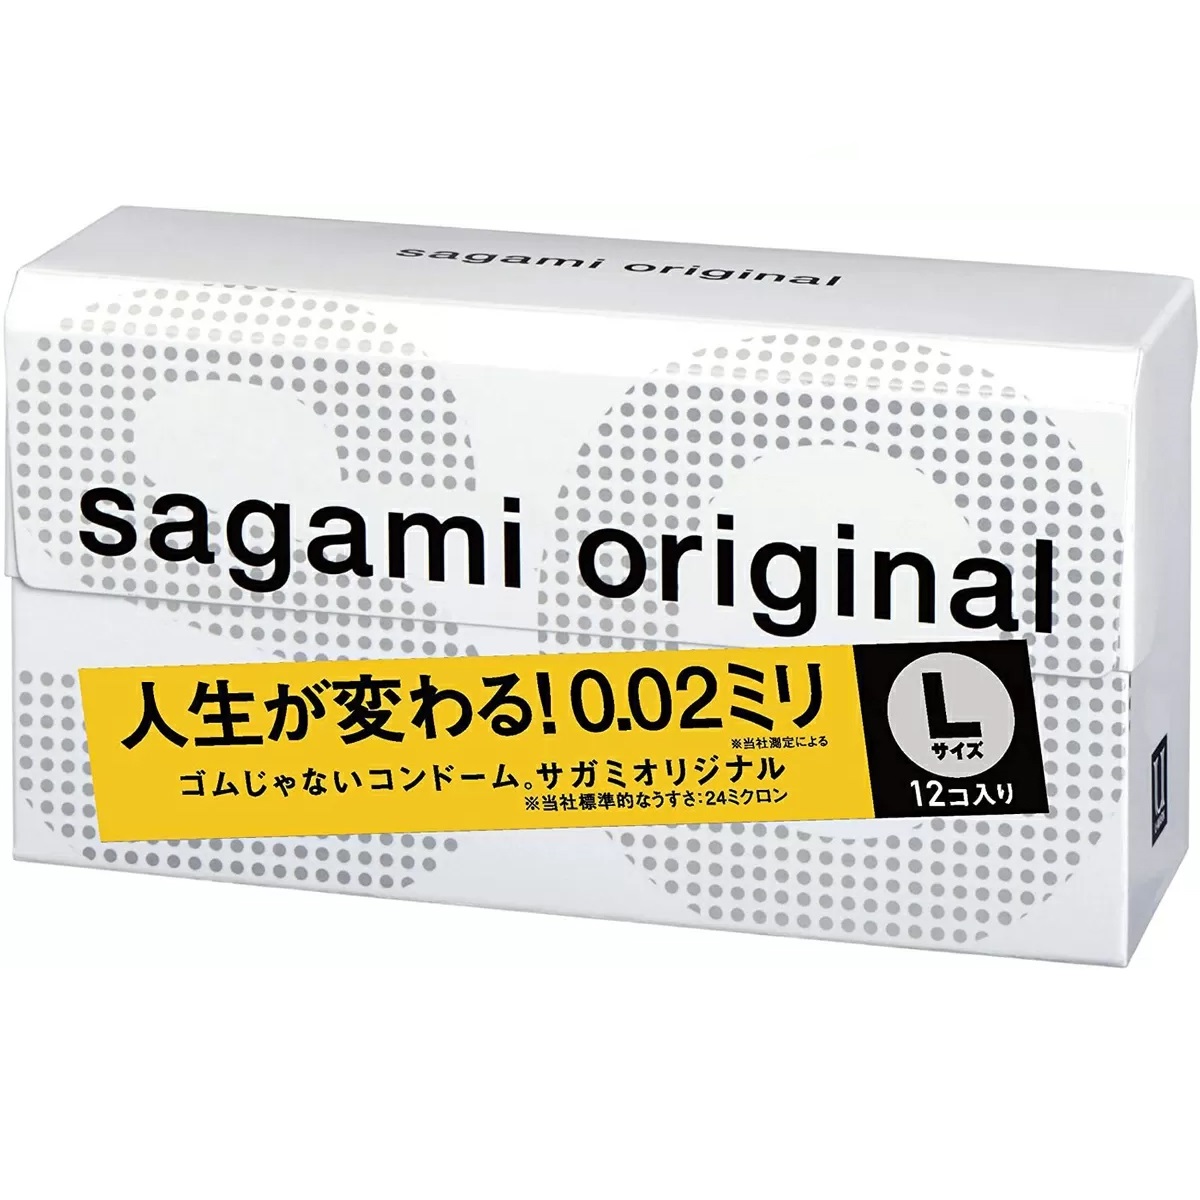 Сагами Ультратонкие презервативы Original, 3 шт (Sagami, ) фото 0